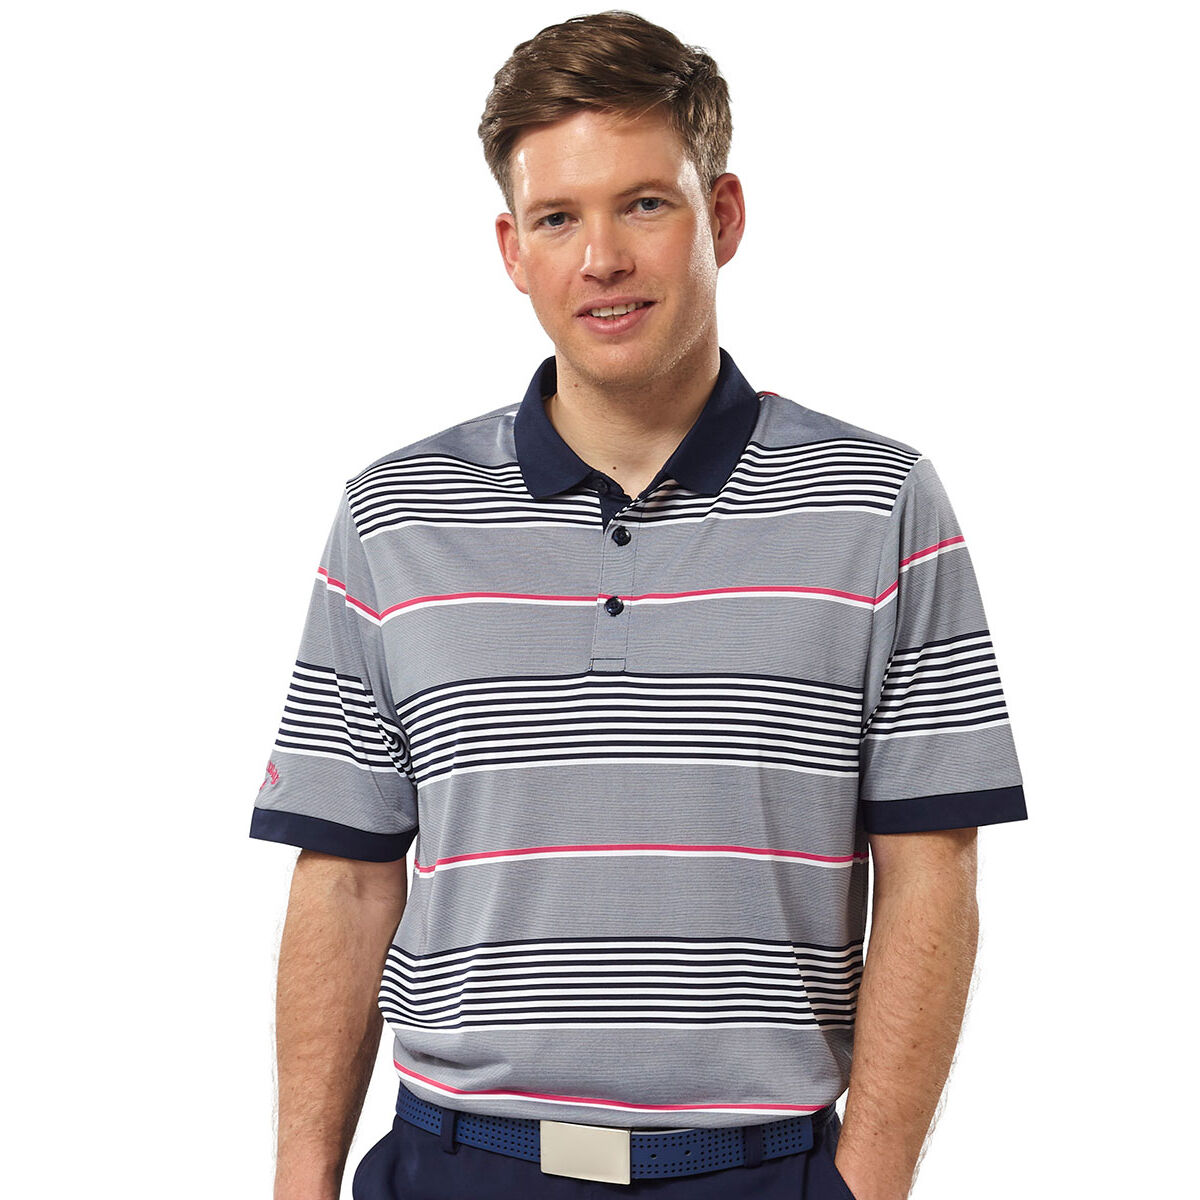 Callaway Golf Polo Shirt-Taglia M-SPEDIZIONE GRATUITA! 